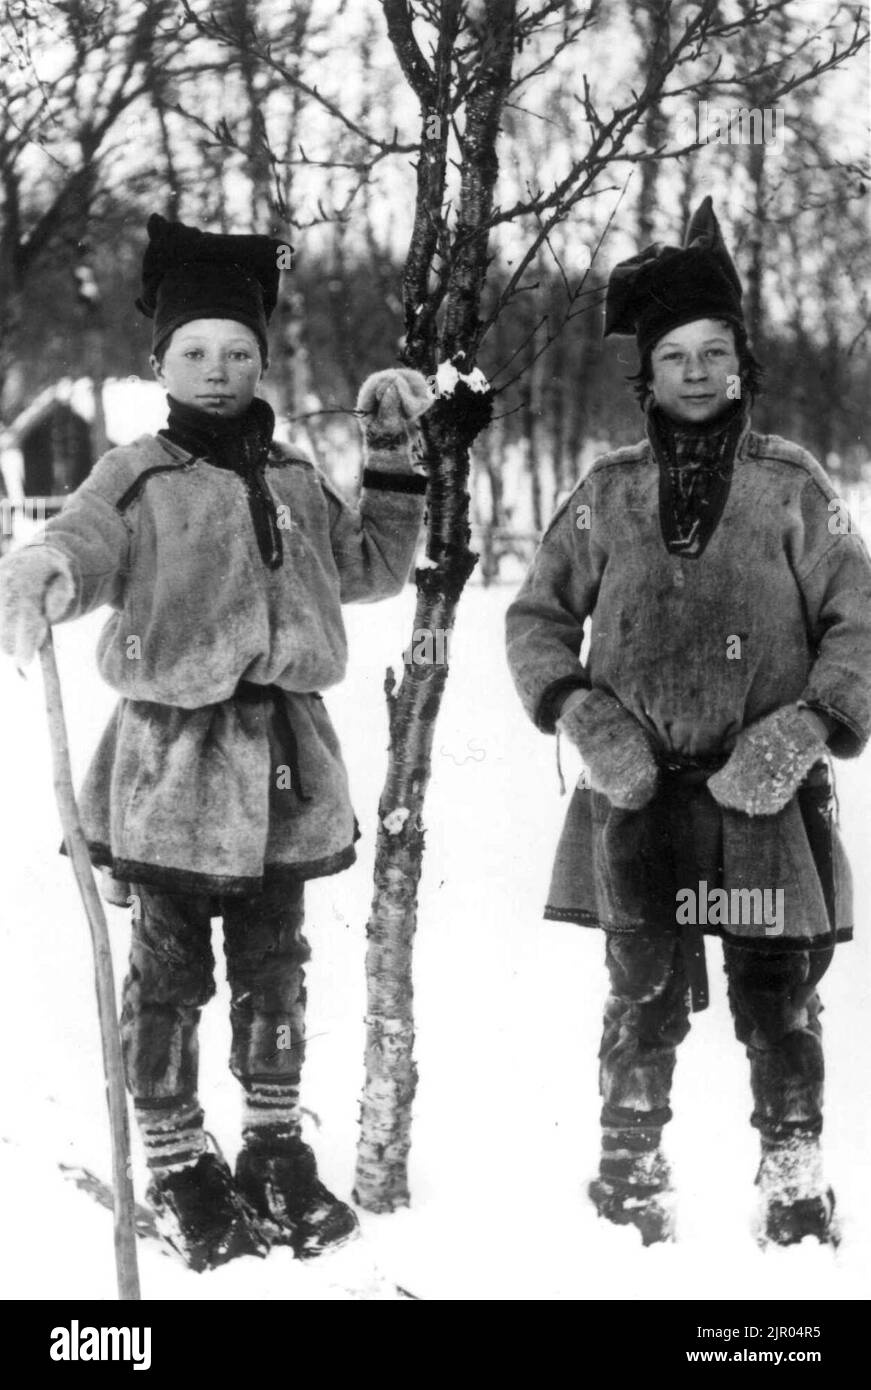 To gutter i samedrakt utendørs vinterstid, Sør-Varanger, Finnmark, før 1900 Stock Photo